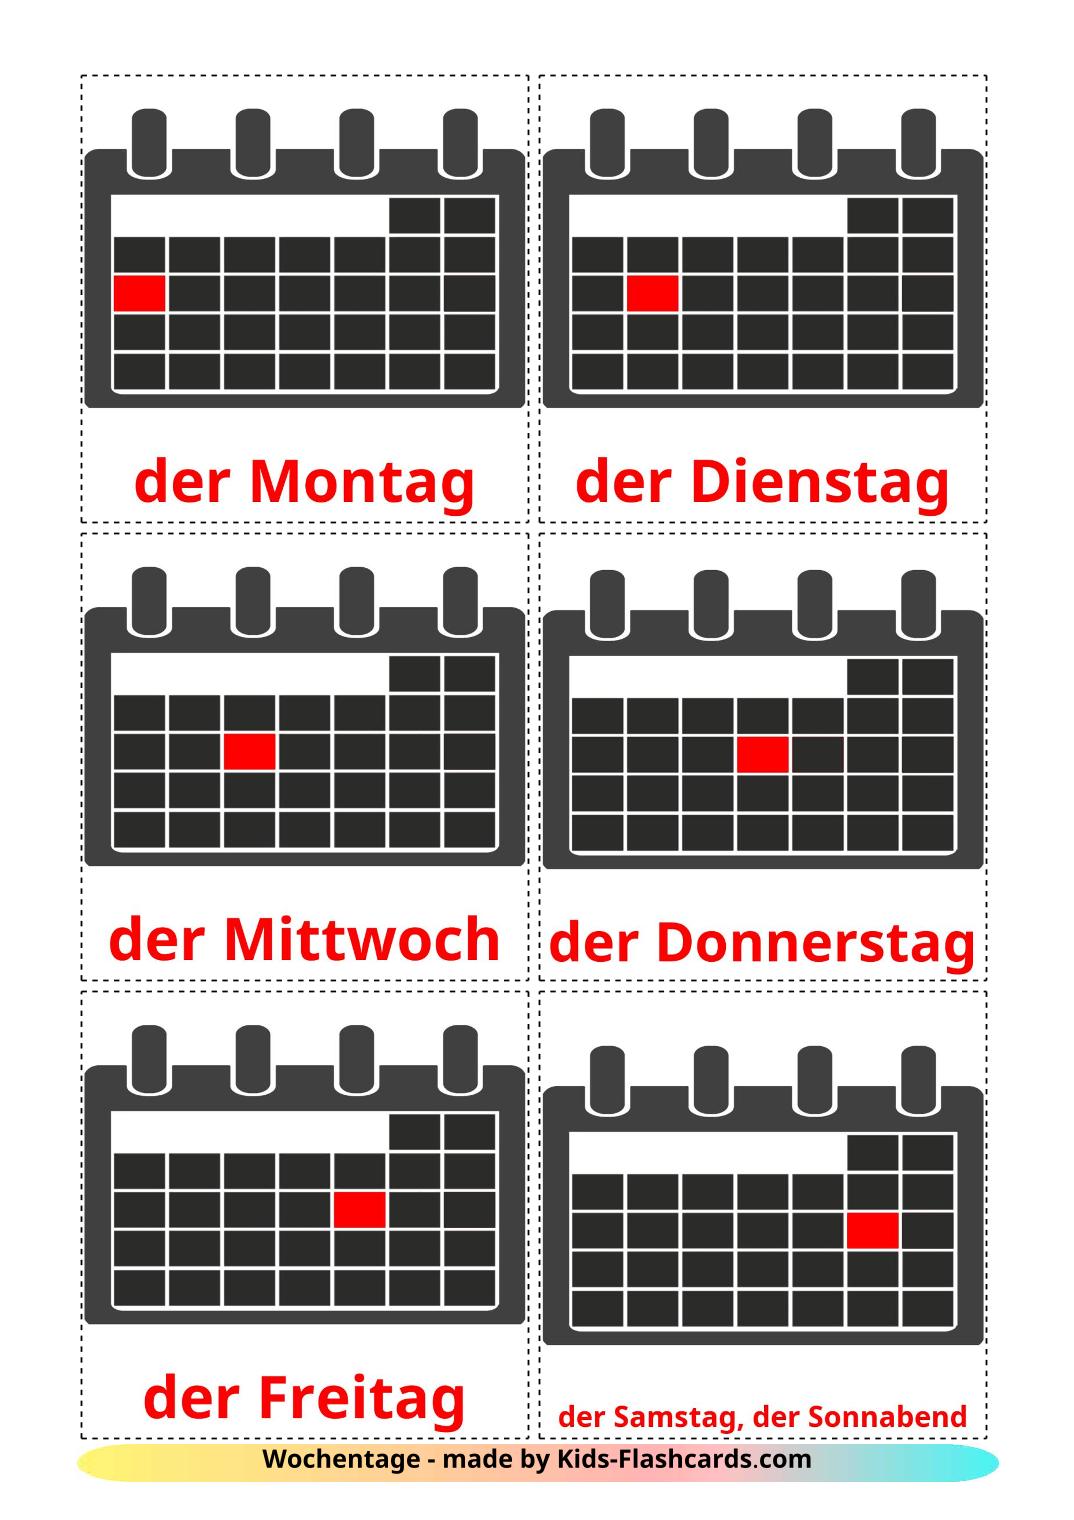 Days of Week - 12 Free Printable german Flashcards 